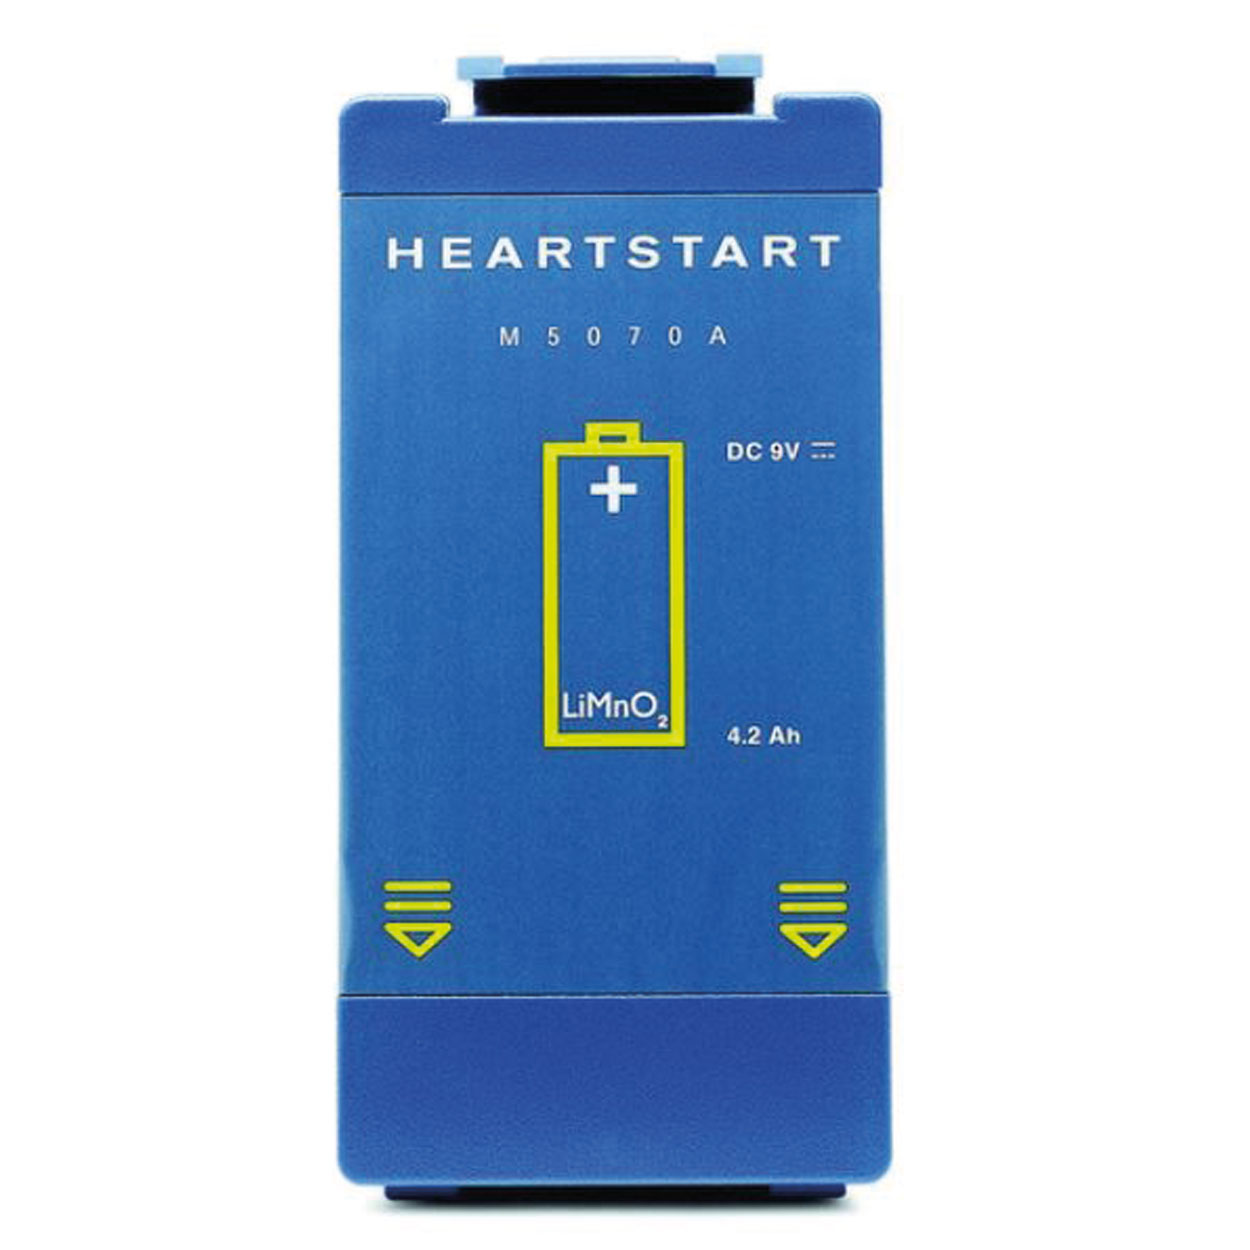 Batterie für Heartstart HS1/FRx Defibrillator